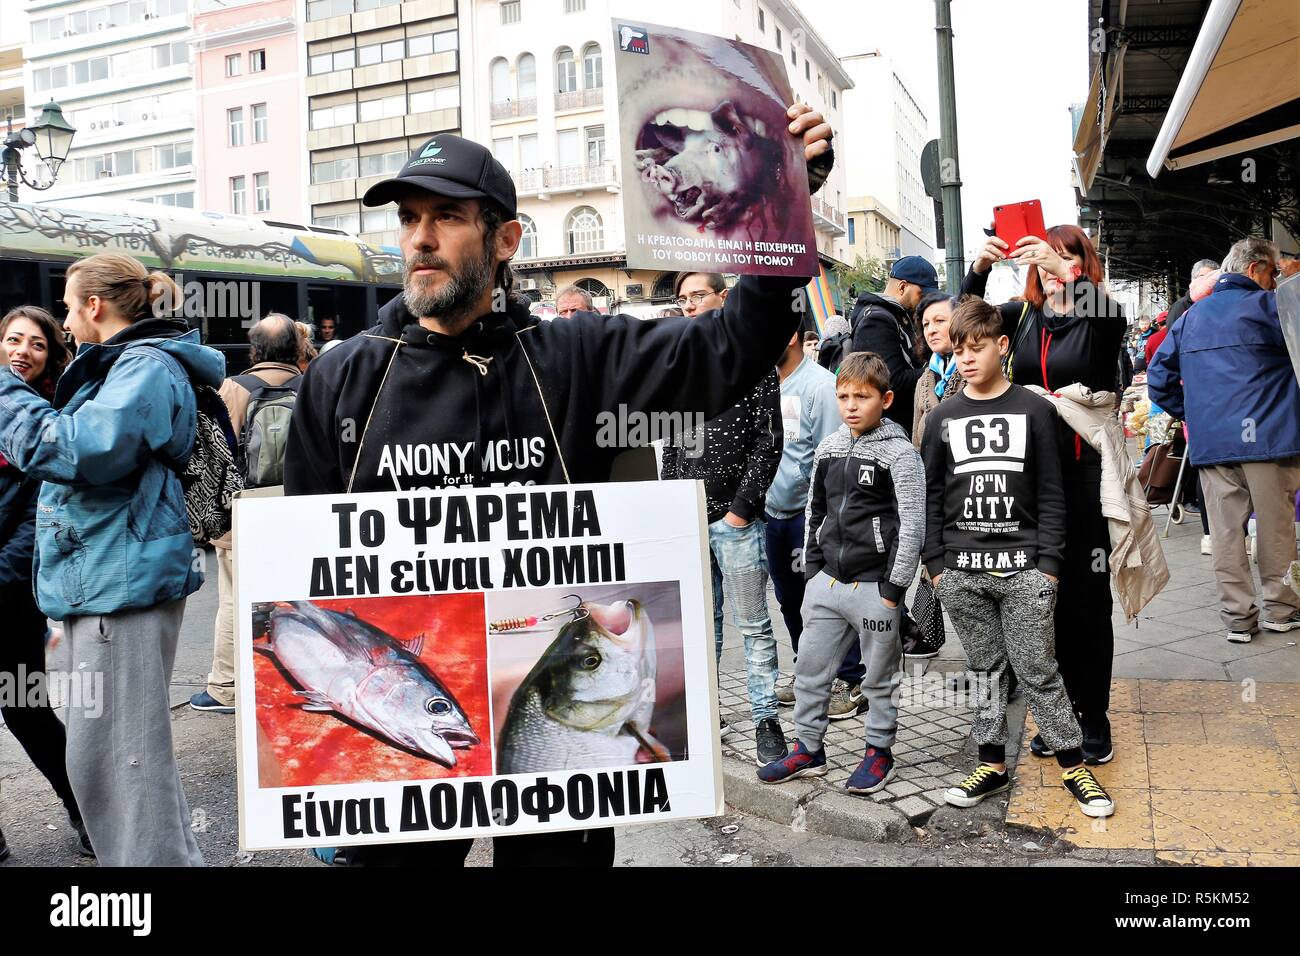 Vu un manifestant tenant des pancartes pendant la manifestation. Militants des droits de l'animal démontrent à Athènes contre l'abus des animaux, de la violence, les mauvais traitements envers les animaux et la promotion d'un mode de vie végétalien. Banque D'Images